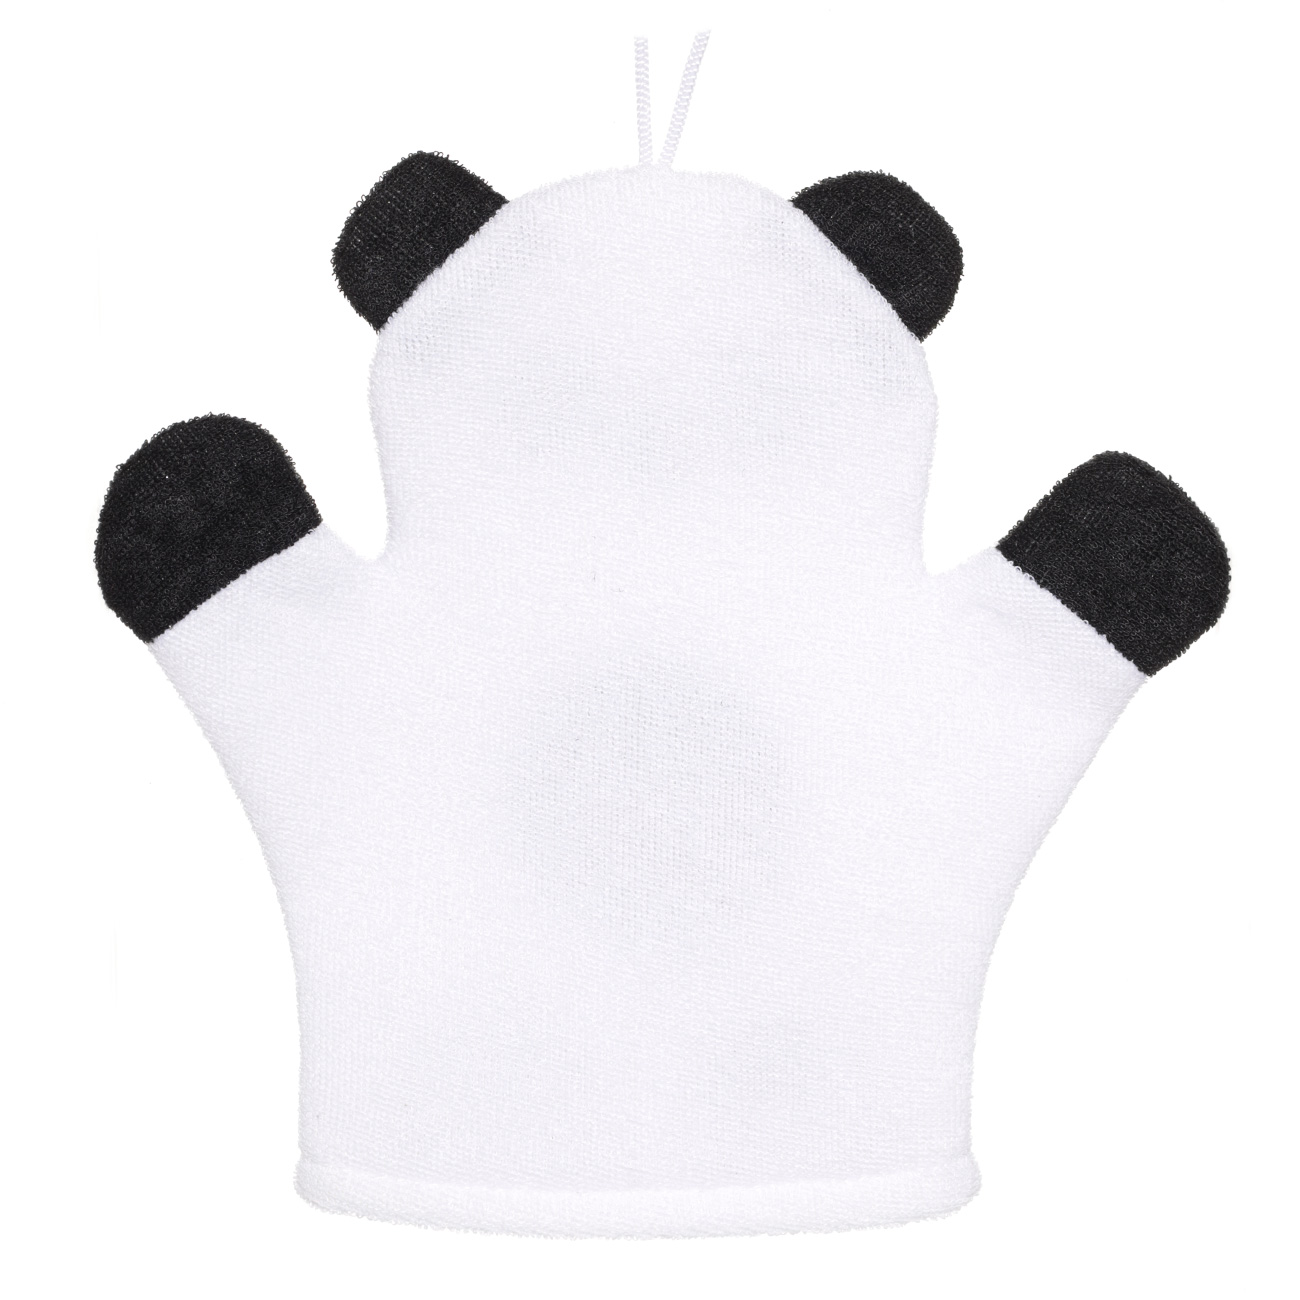 Мочалка-варежка для мытья тела, 20х20 см, детская, полиэстер, черно-белая, Панда, Panda изображение № 2